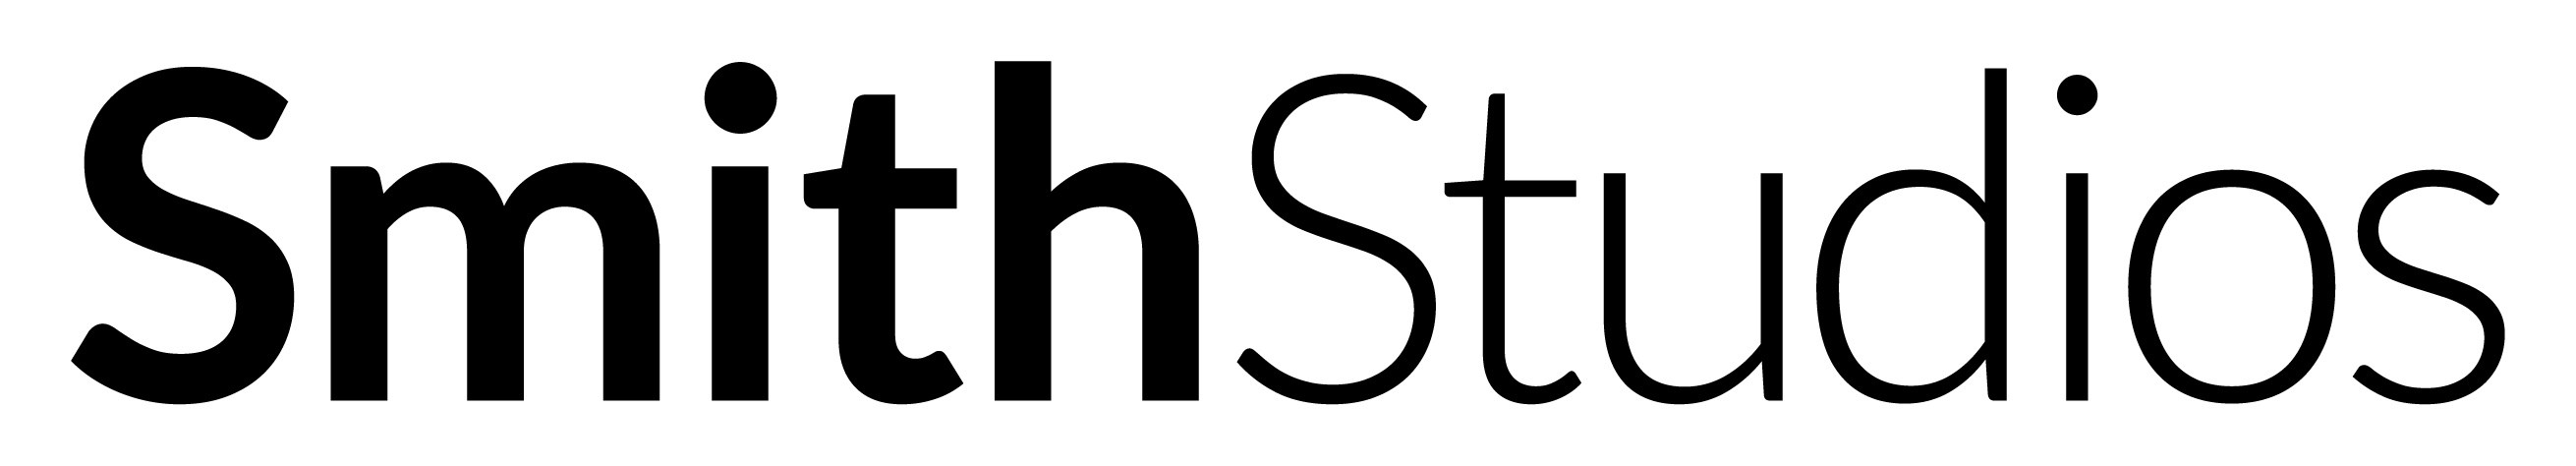 smithstudios logo